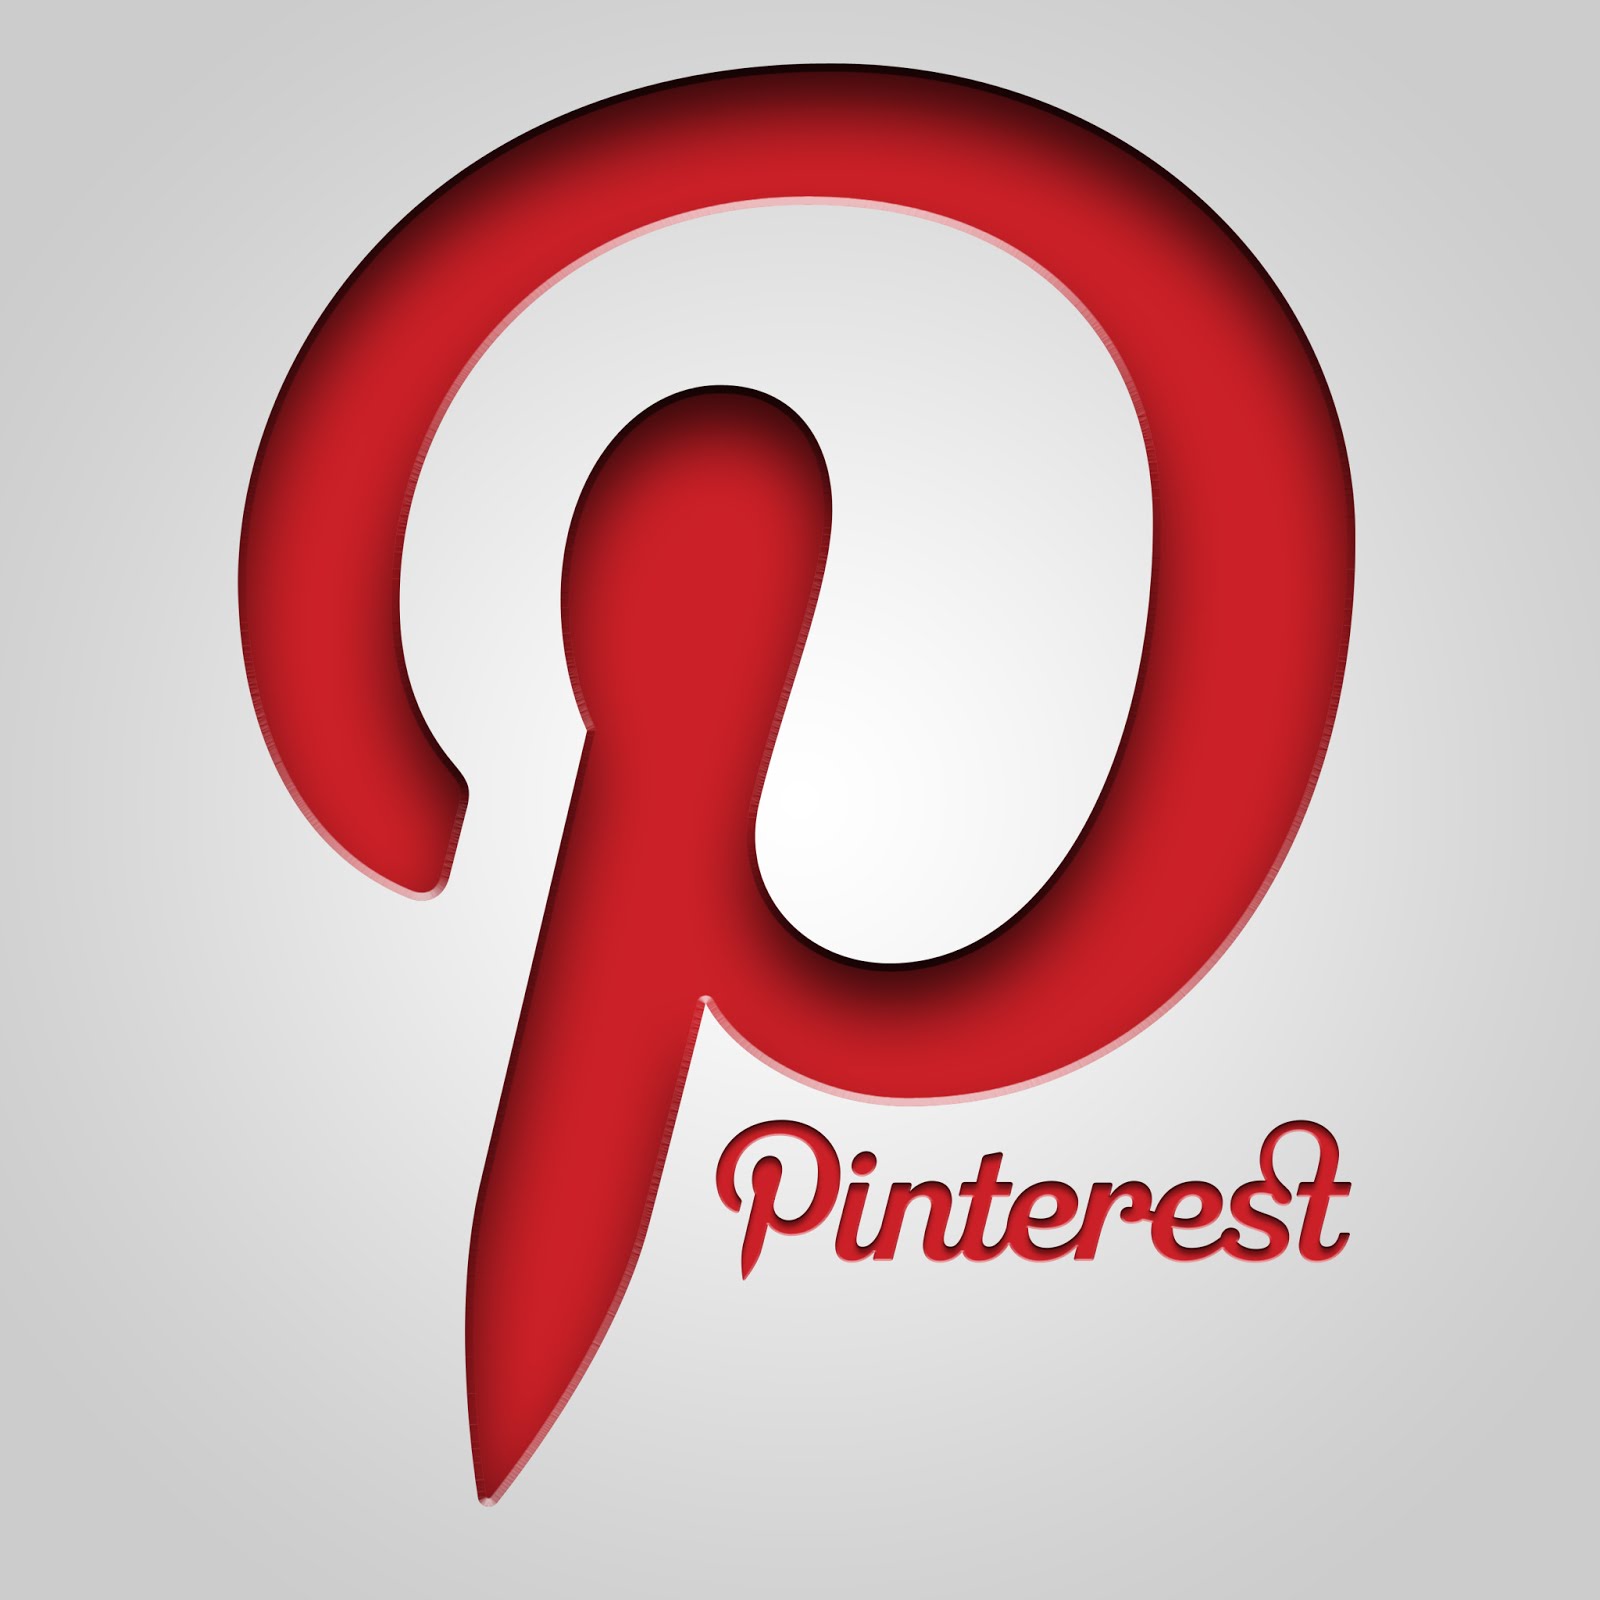 Proyectos en Pinterest